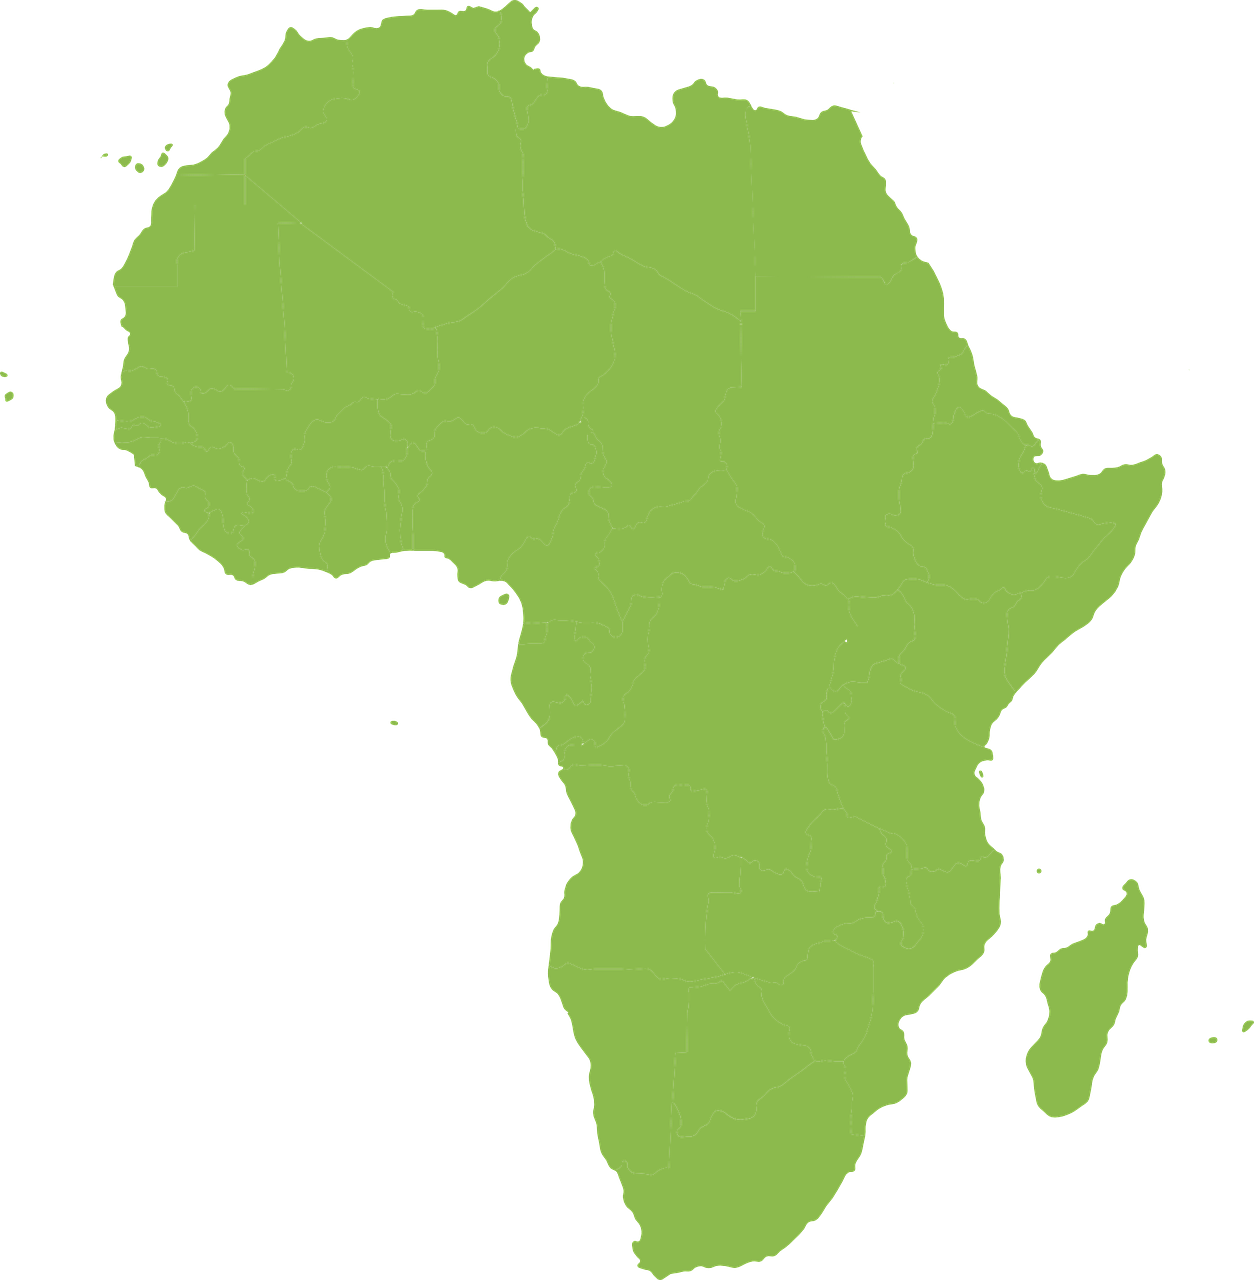 Représentation de l'Afrique pour illustrer une citation africaine